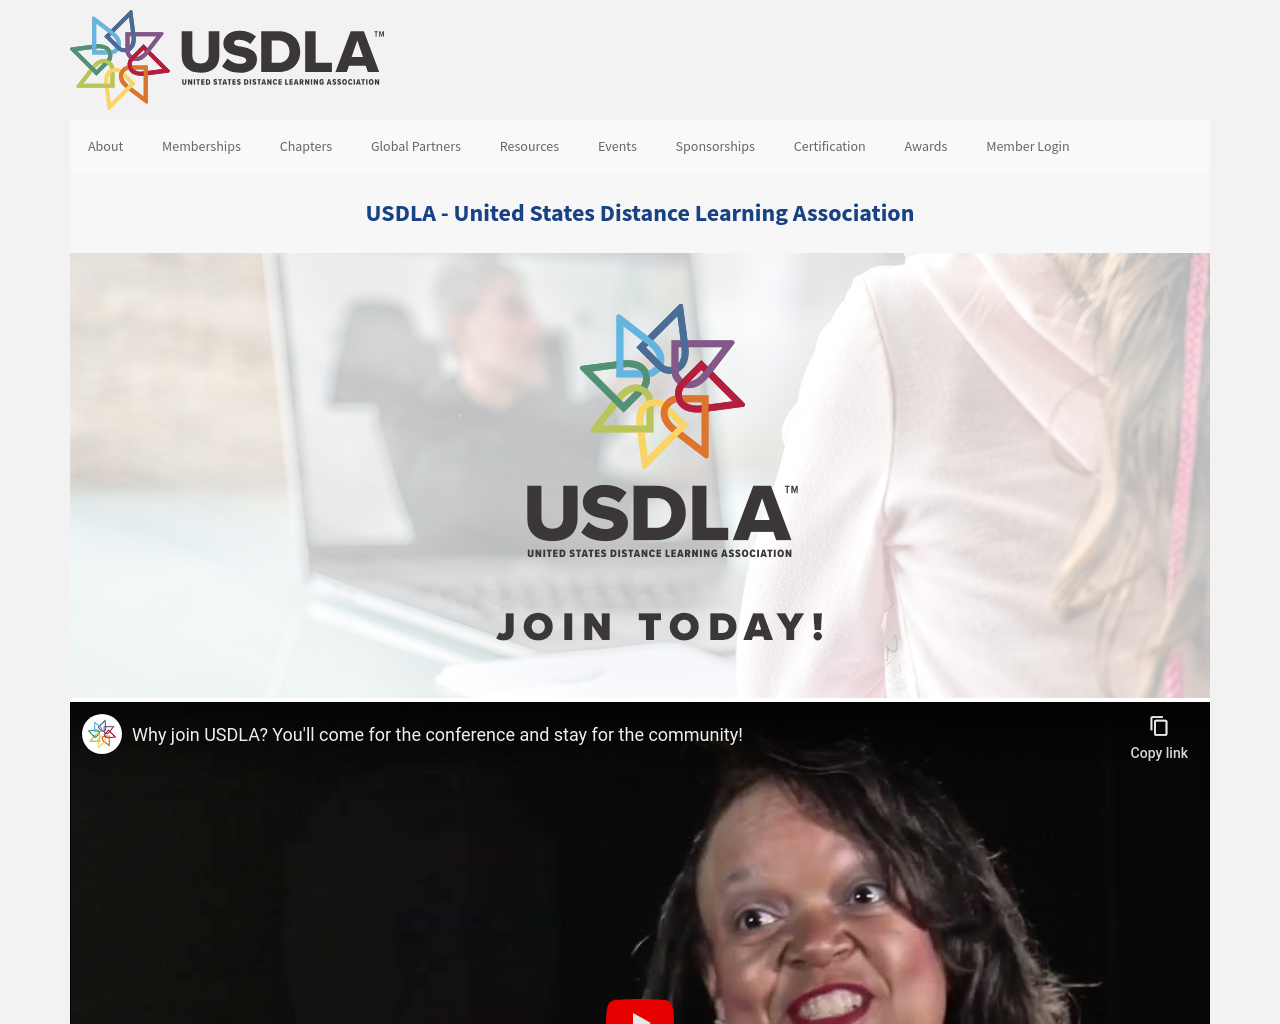 usdla.org